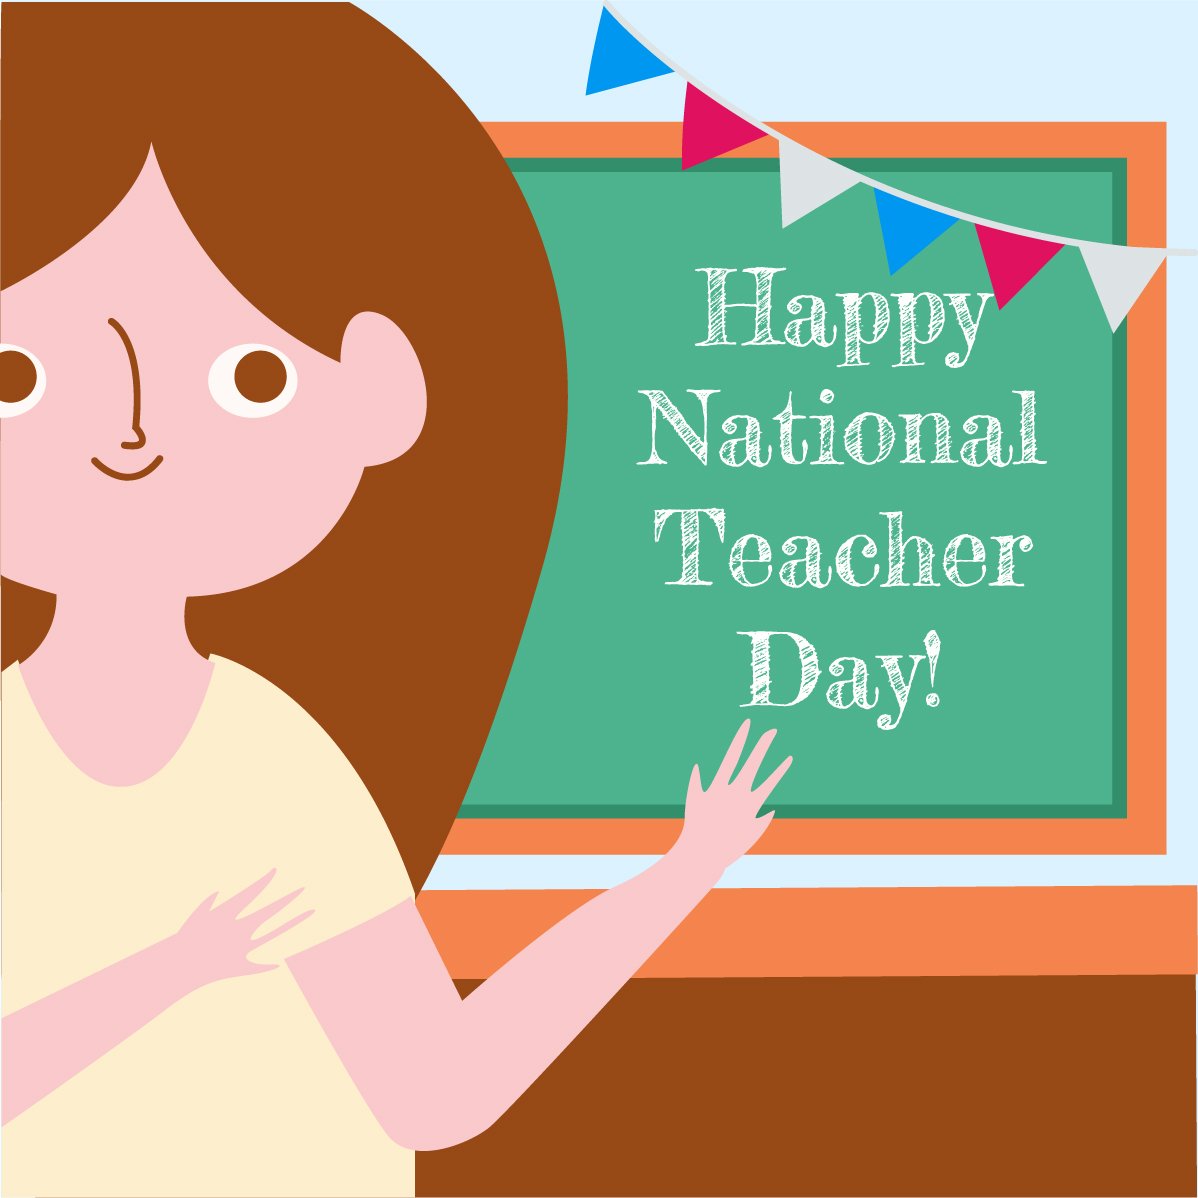 Happy National Teacher Day Illustration in EPS, Illustrator, JPG, PSD